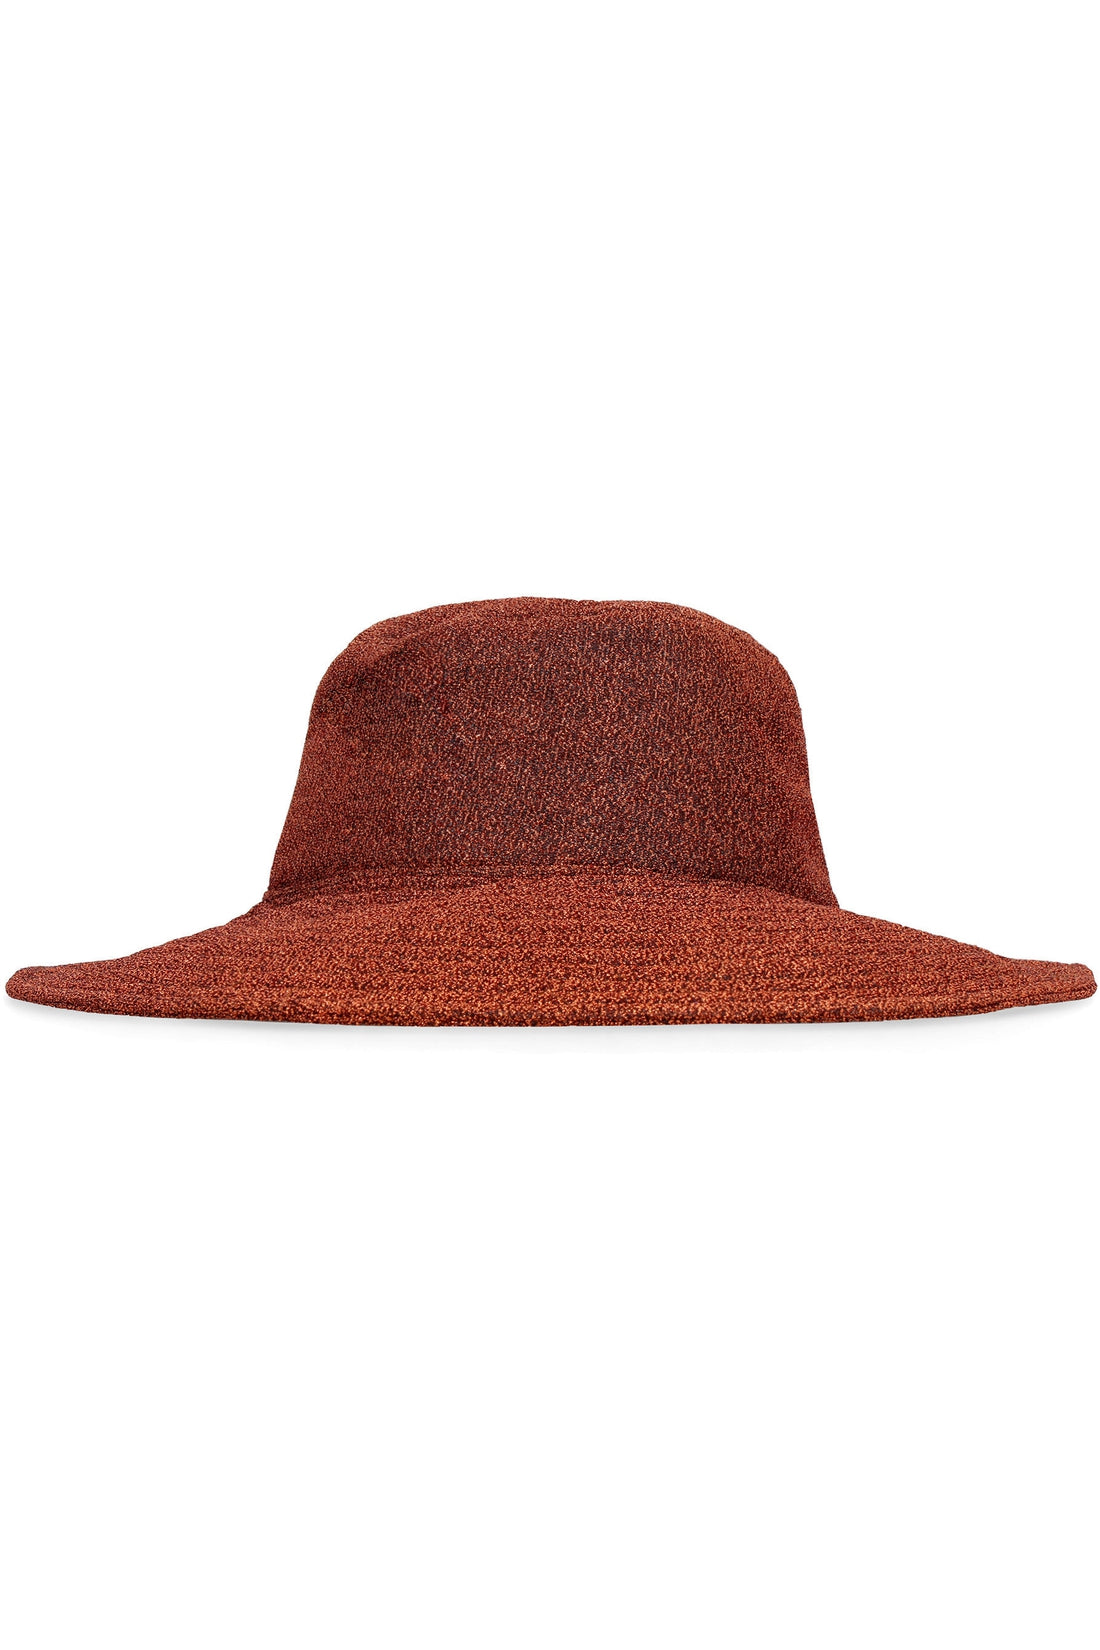 Oséree-OUTLET-SALE-Lumière beach hat-ARCHIVIST